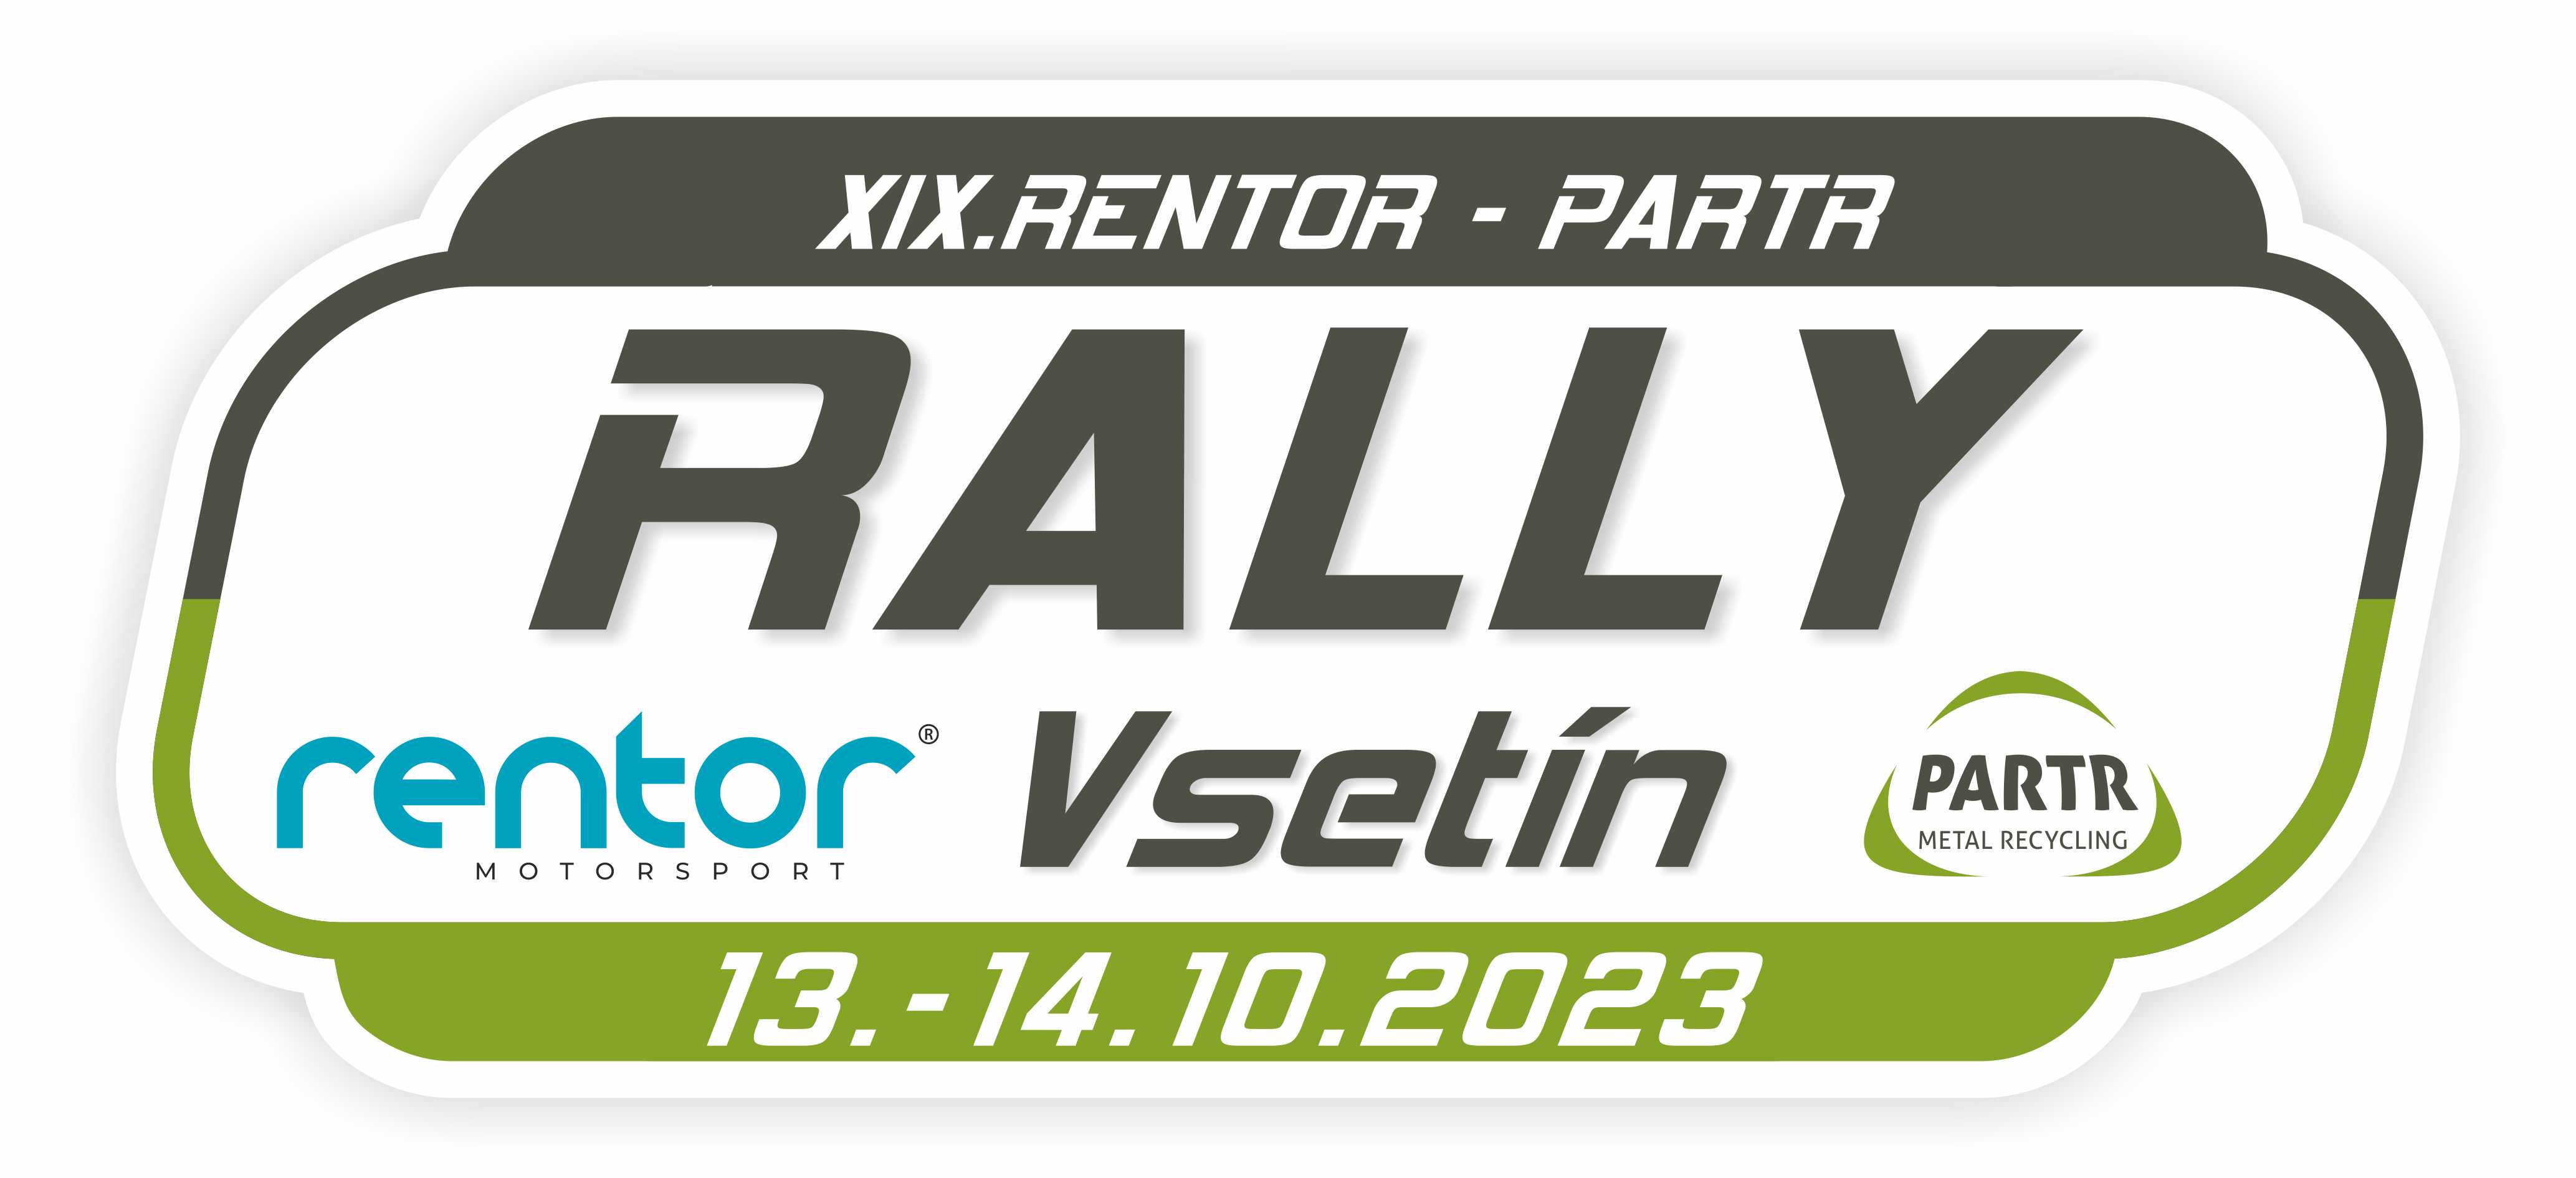 XIX. Rentor - Partr rally Vsetín - logo